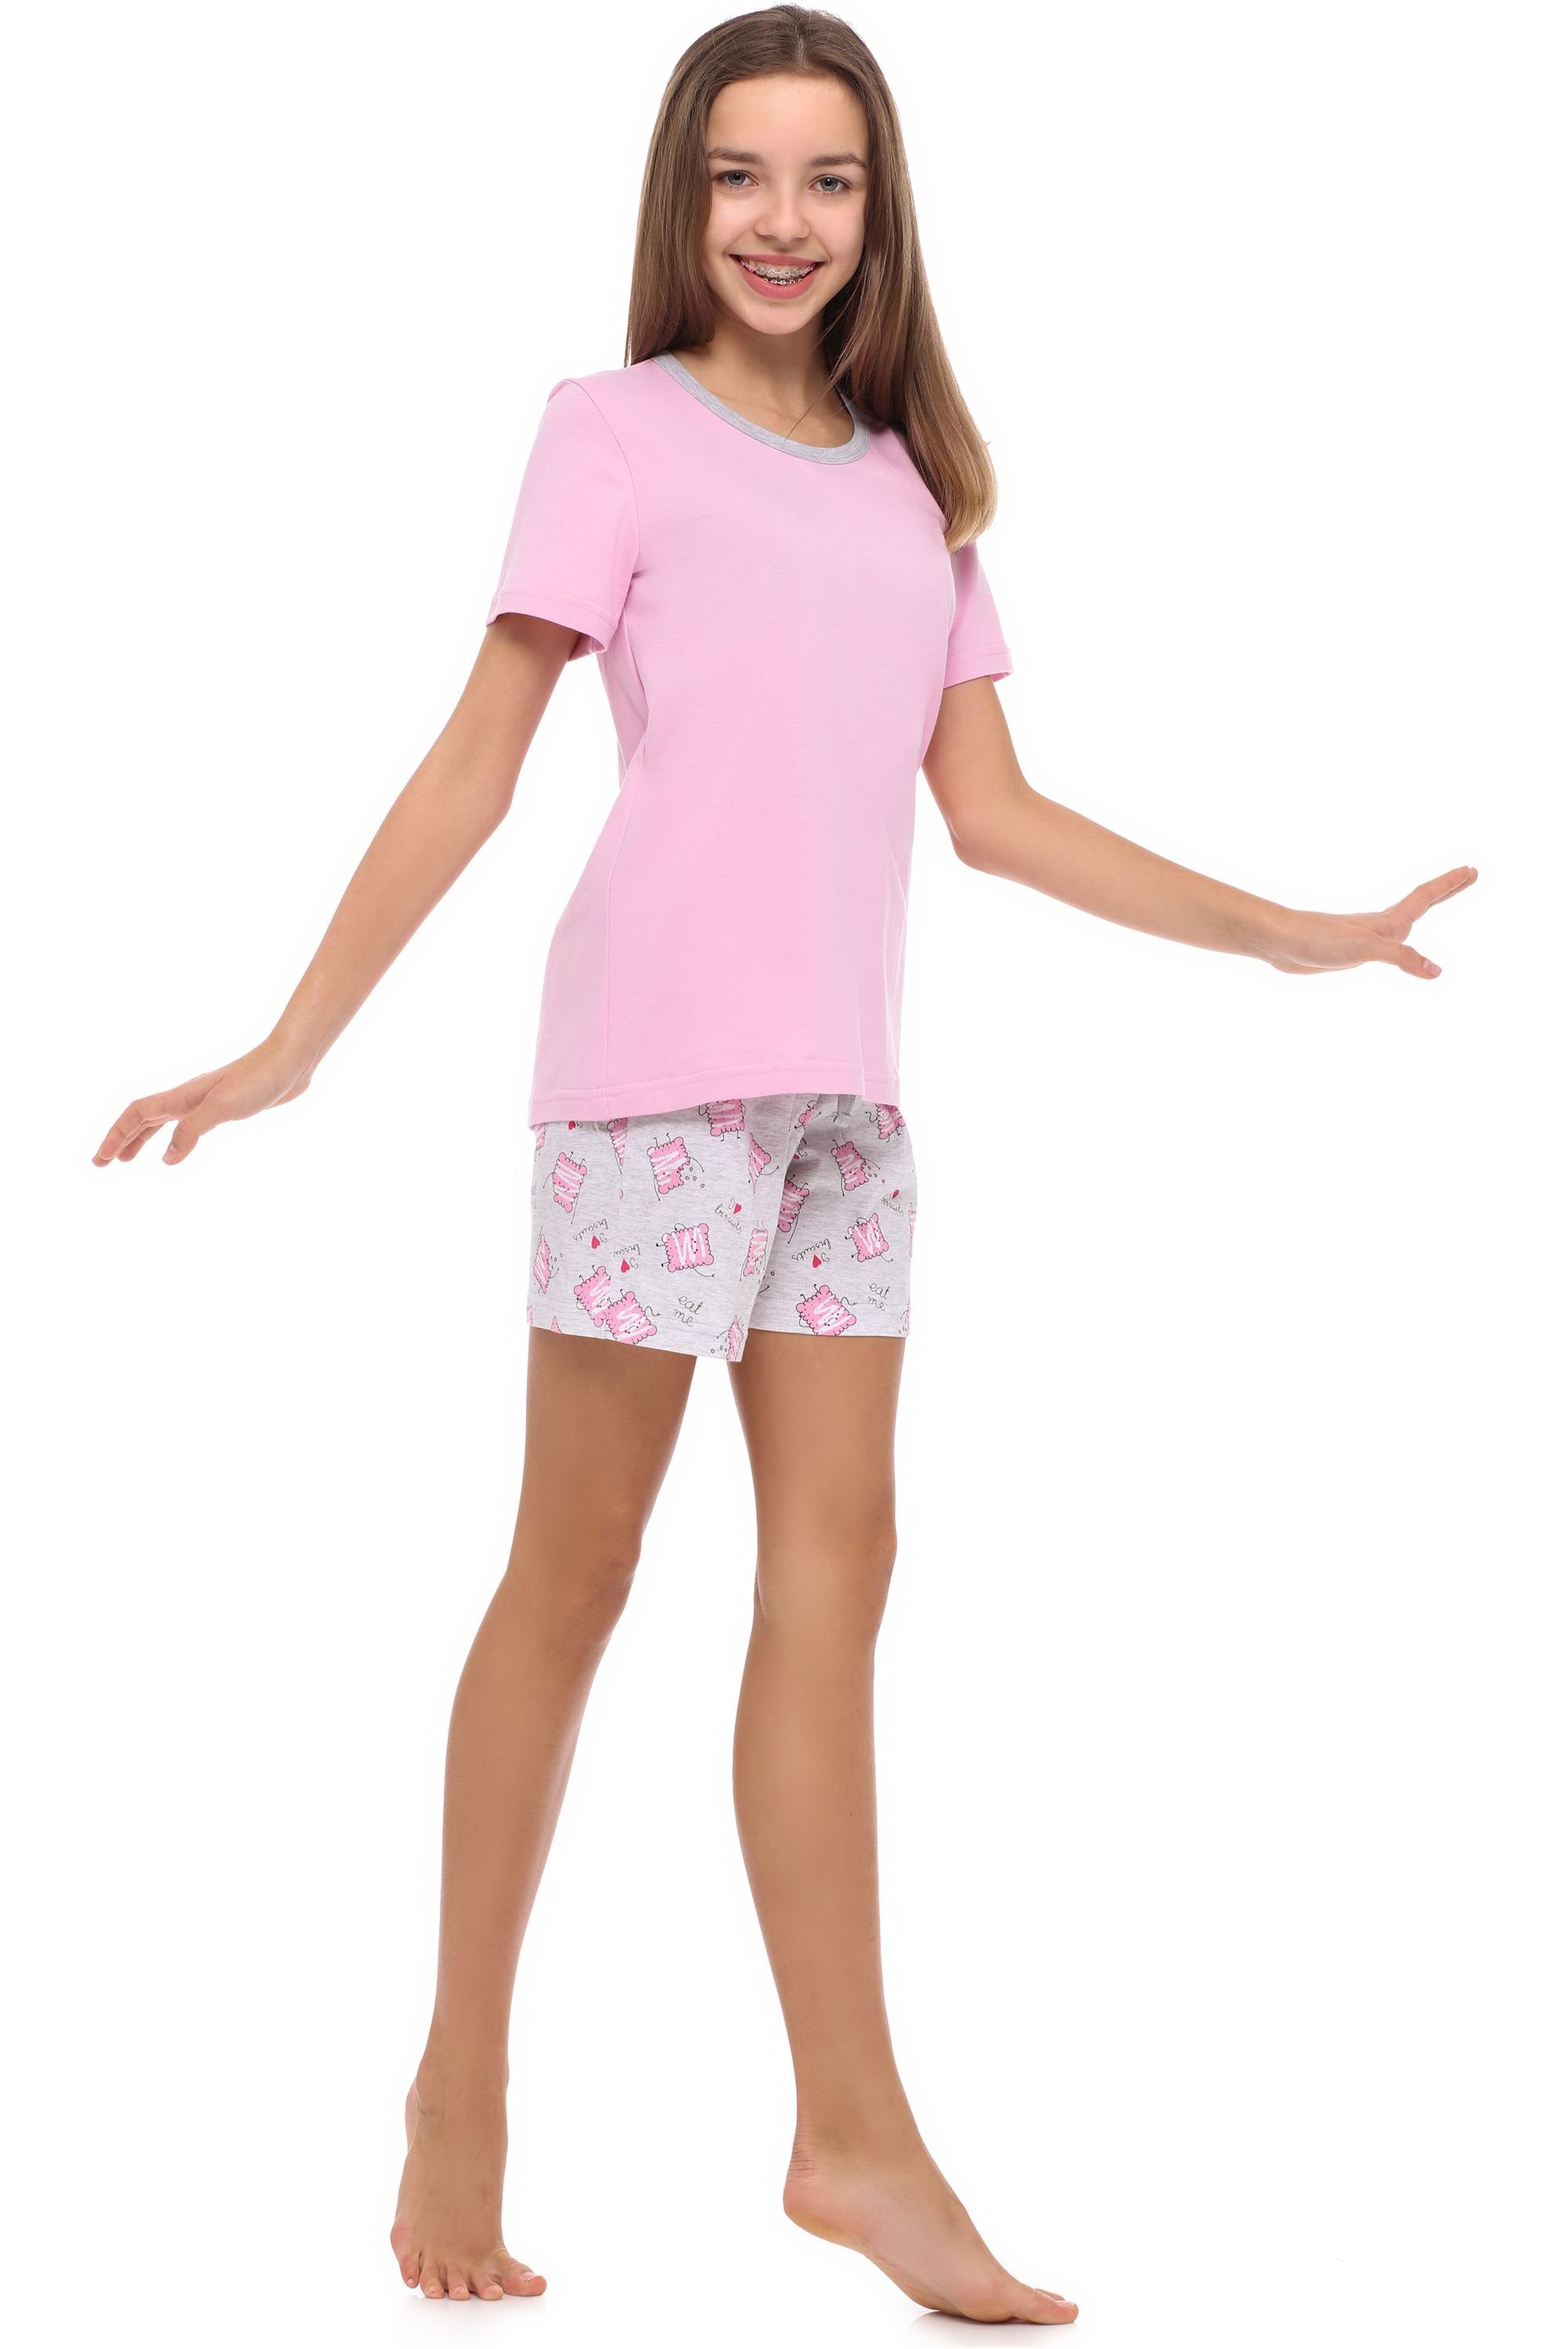 Jugend Schlafanzug Schlafanzug Style MS10-239 Merry Mädchen Rosa/Kekse